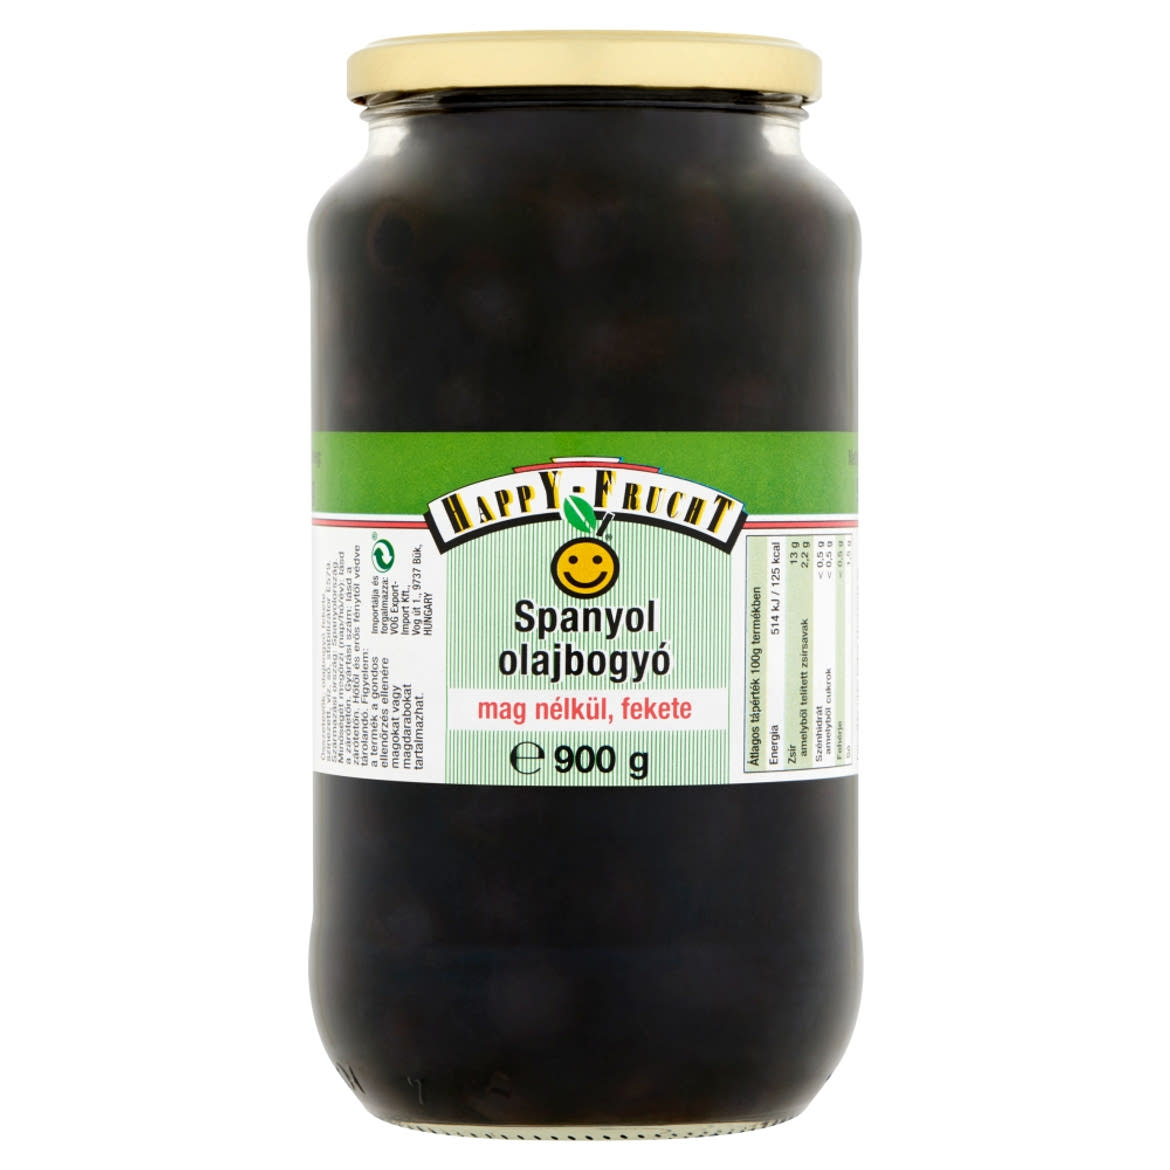 Happy Frucht fekete spanyol olajbogyó mag nélkül 900 g